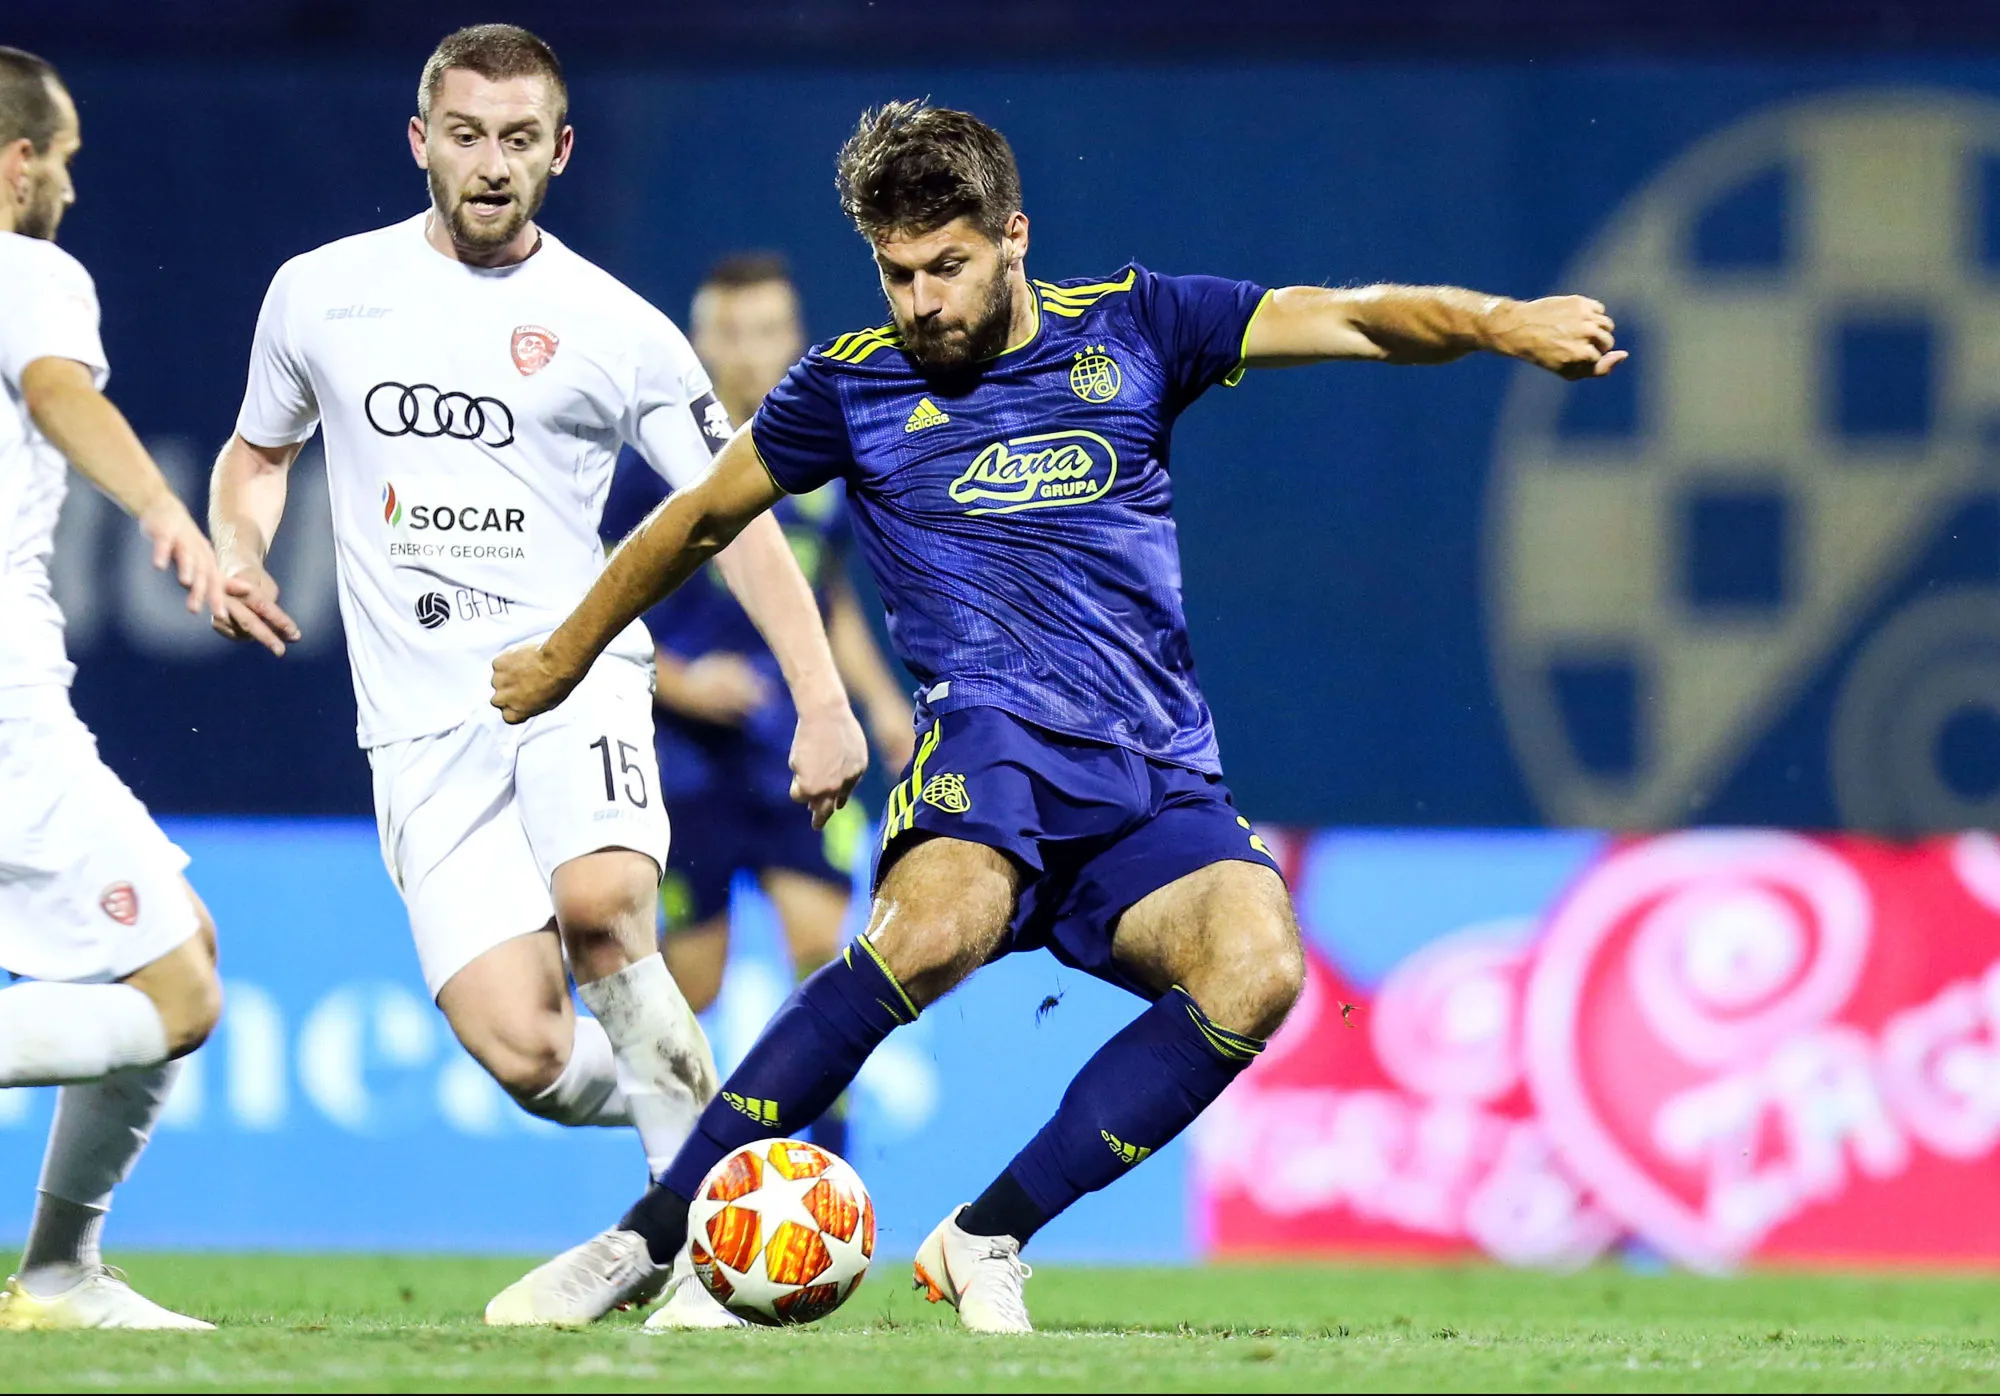 Pronostic Dinamo Zagreb Rosenborg : Analyse, prono et cotes du match de Ligue des Champions